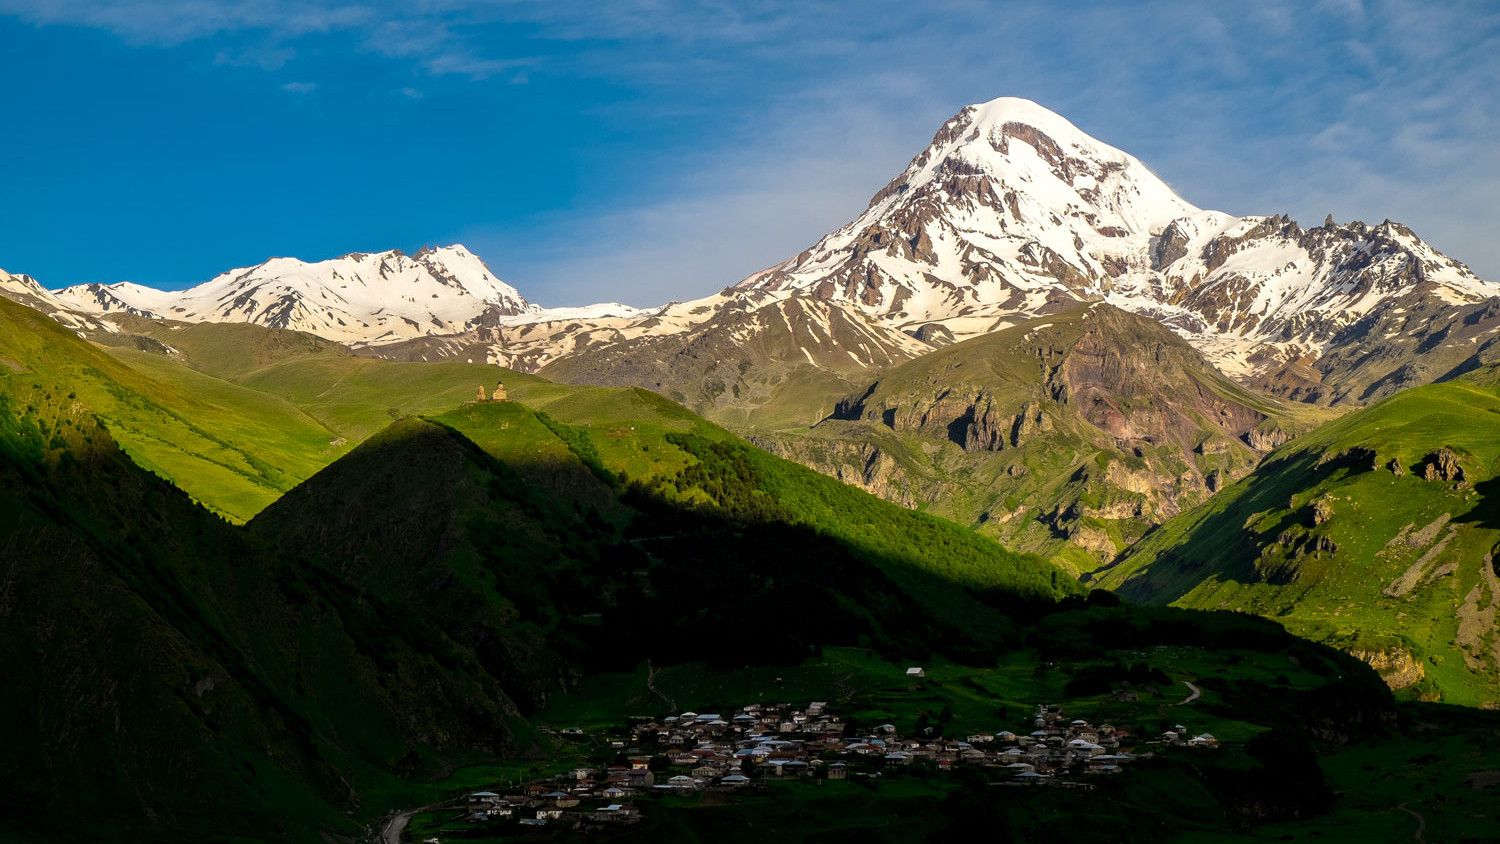 Gergeti and Kazbegi mountains